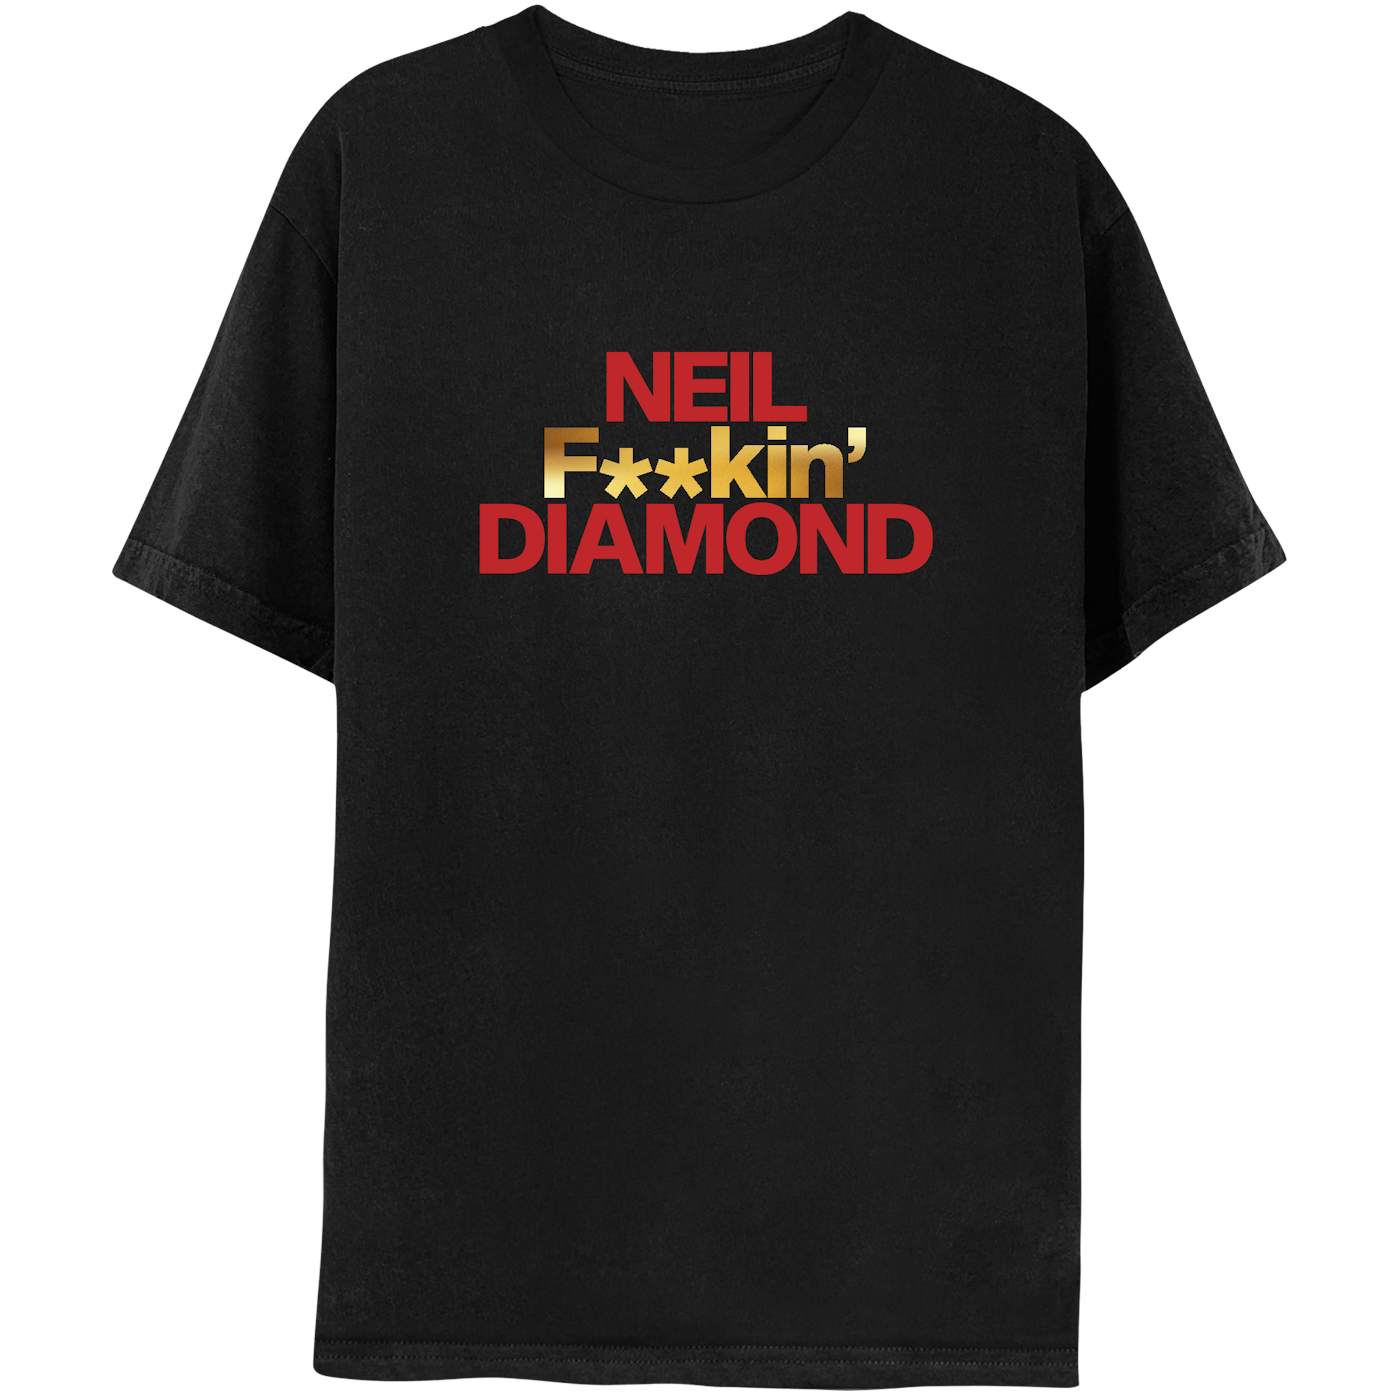 Neil Diamond NEIL F**KIN' DIAMOND short sleeve tee